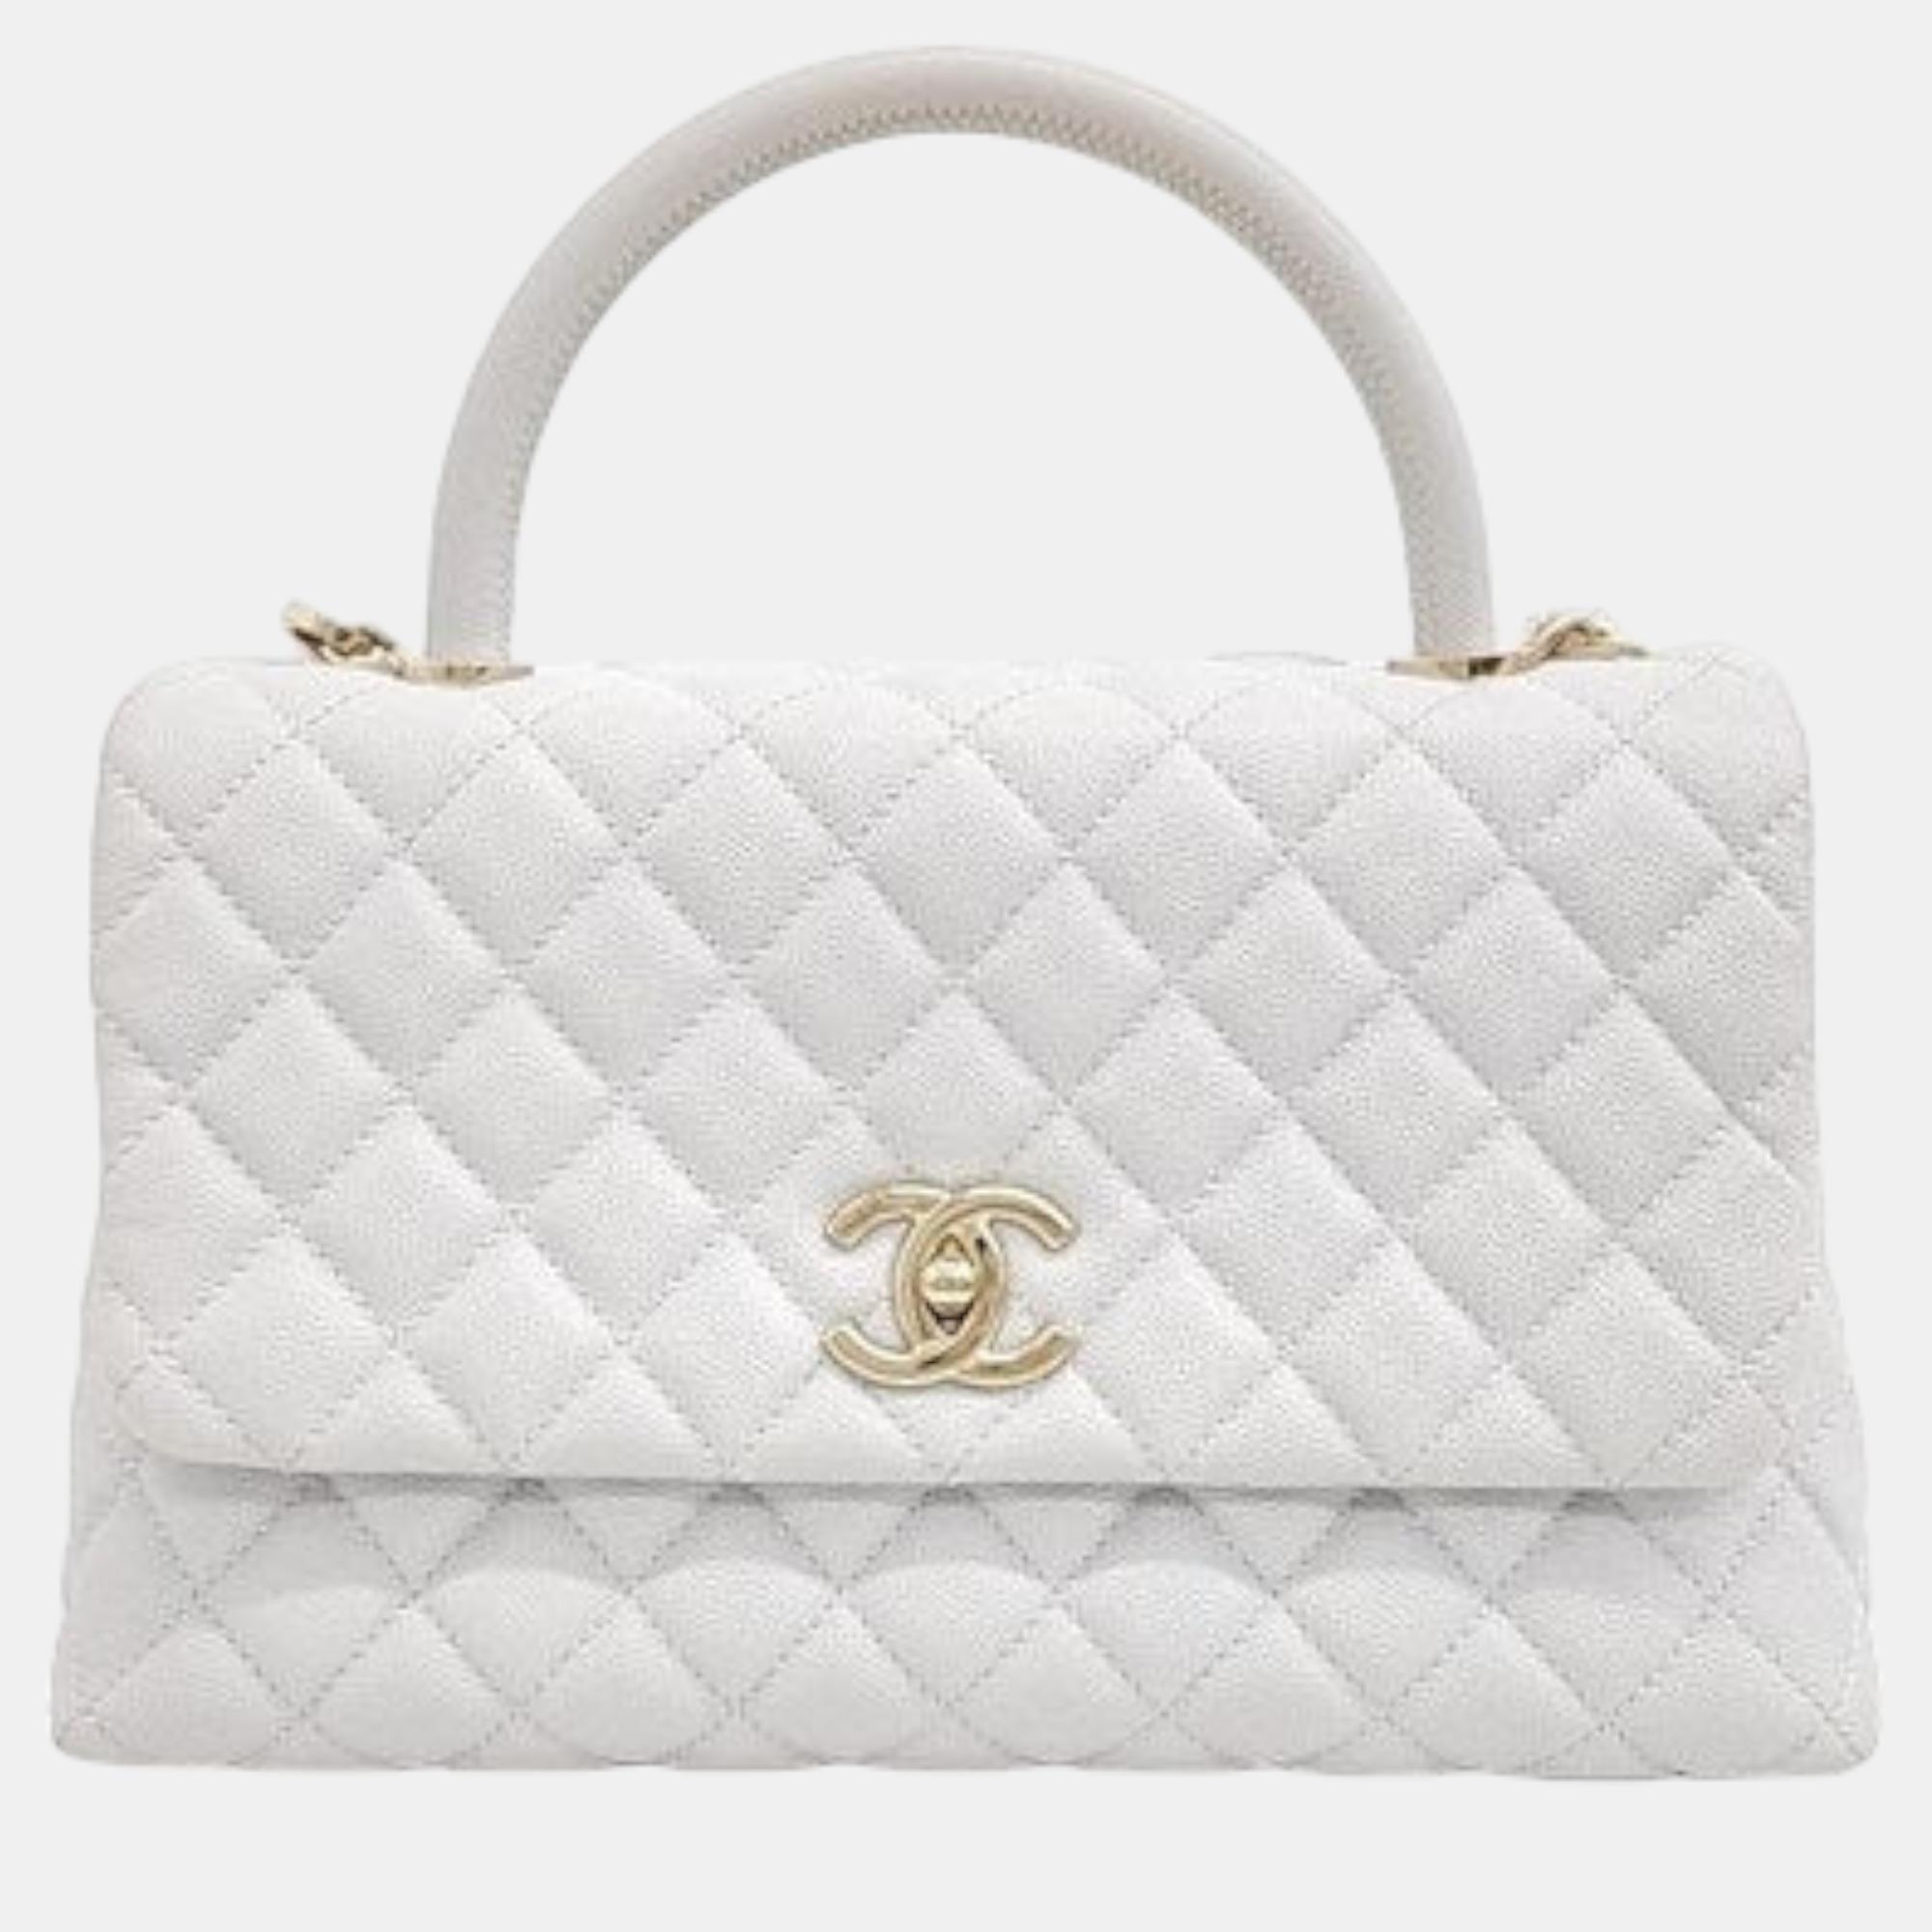 Chanel caviar coco handle handbag